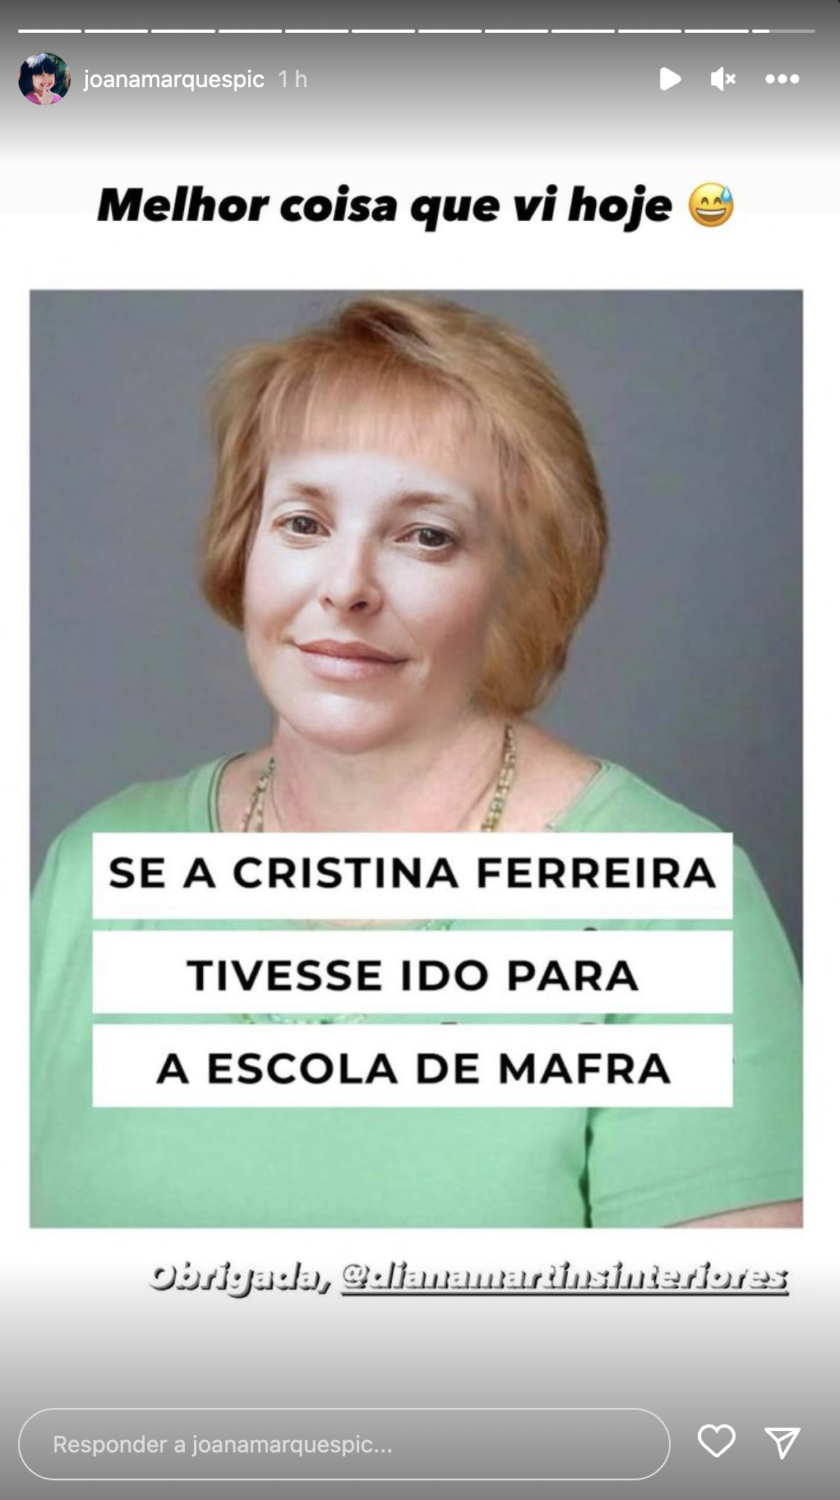 Joana Marques &#8216;rendida&#8217; a paródia sobre Cristina Ferreira: &#8220;Melhor coisa que vi hoje&#8230;&#8221;